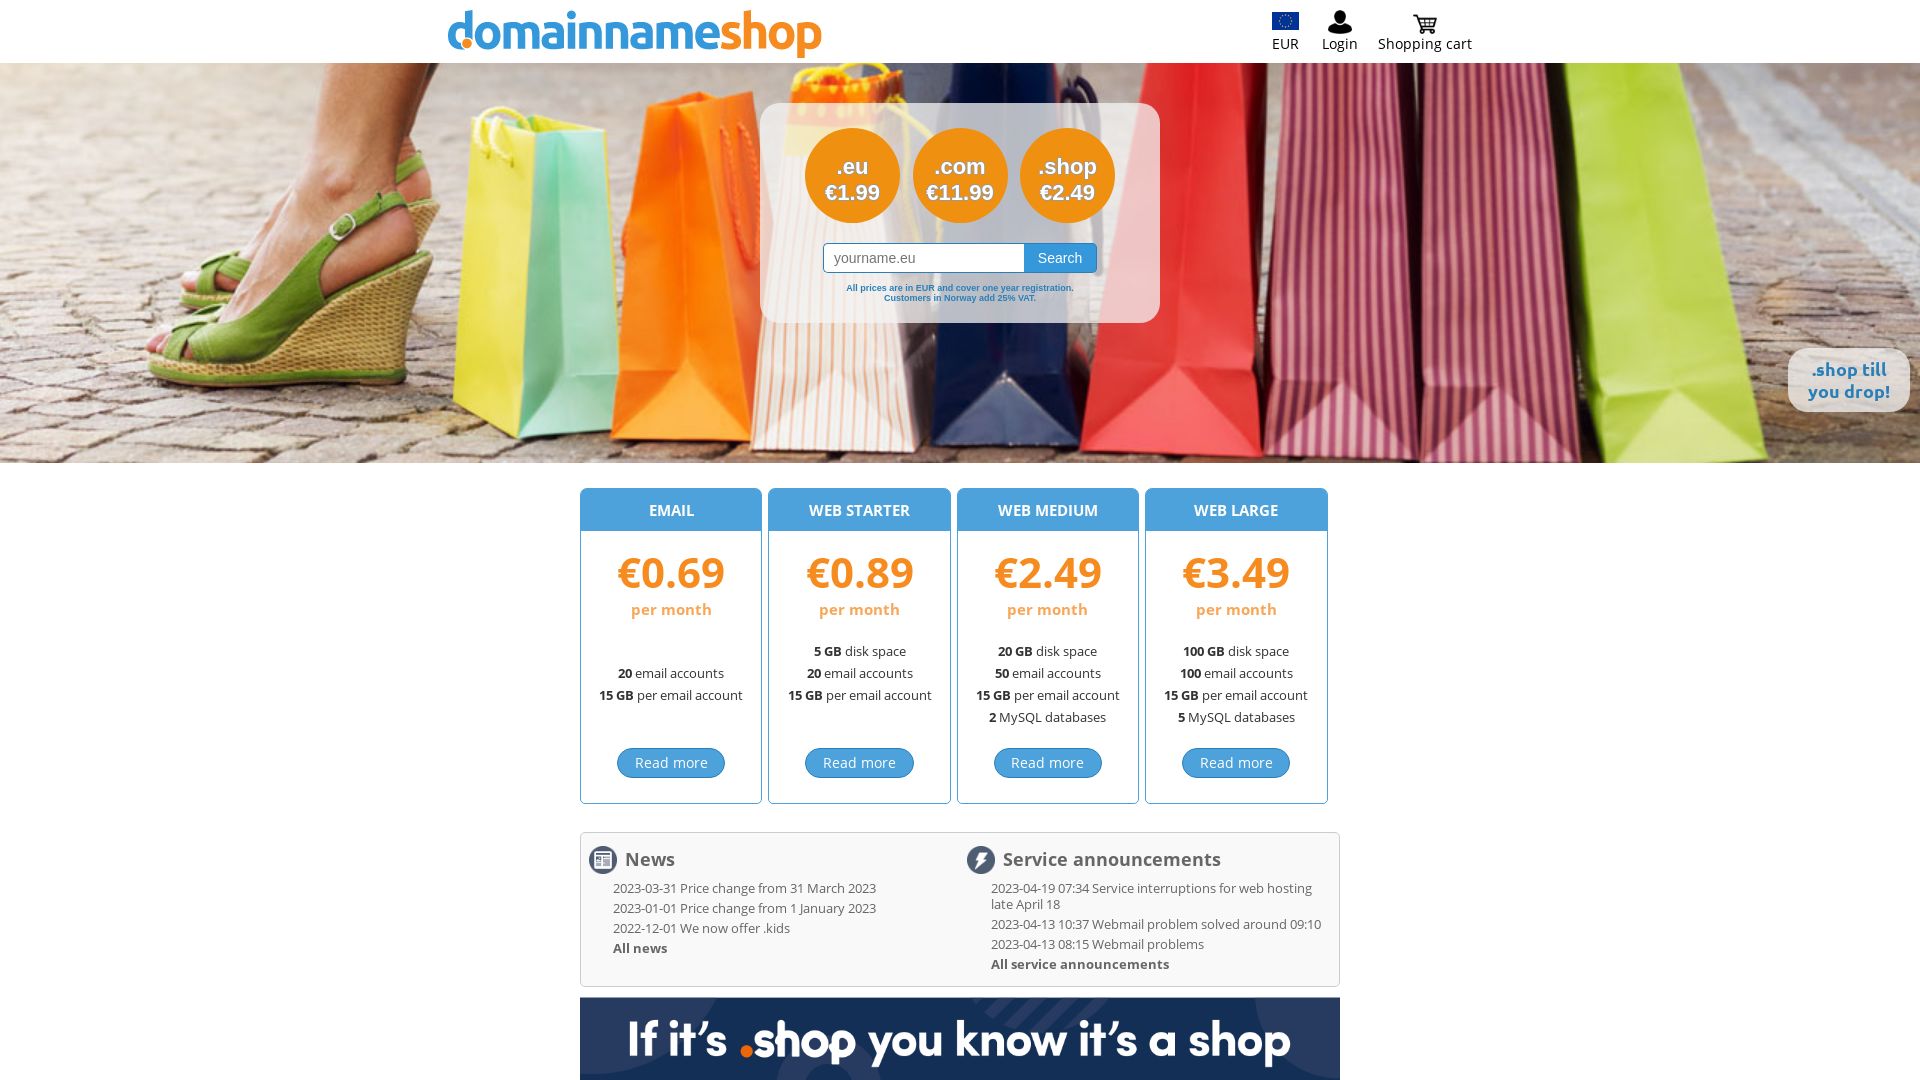 Website status domainnameshop.com is   ONLINE